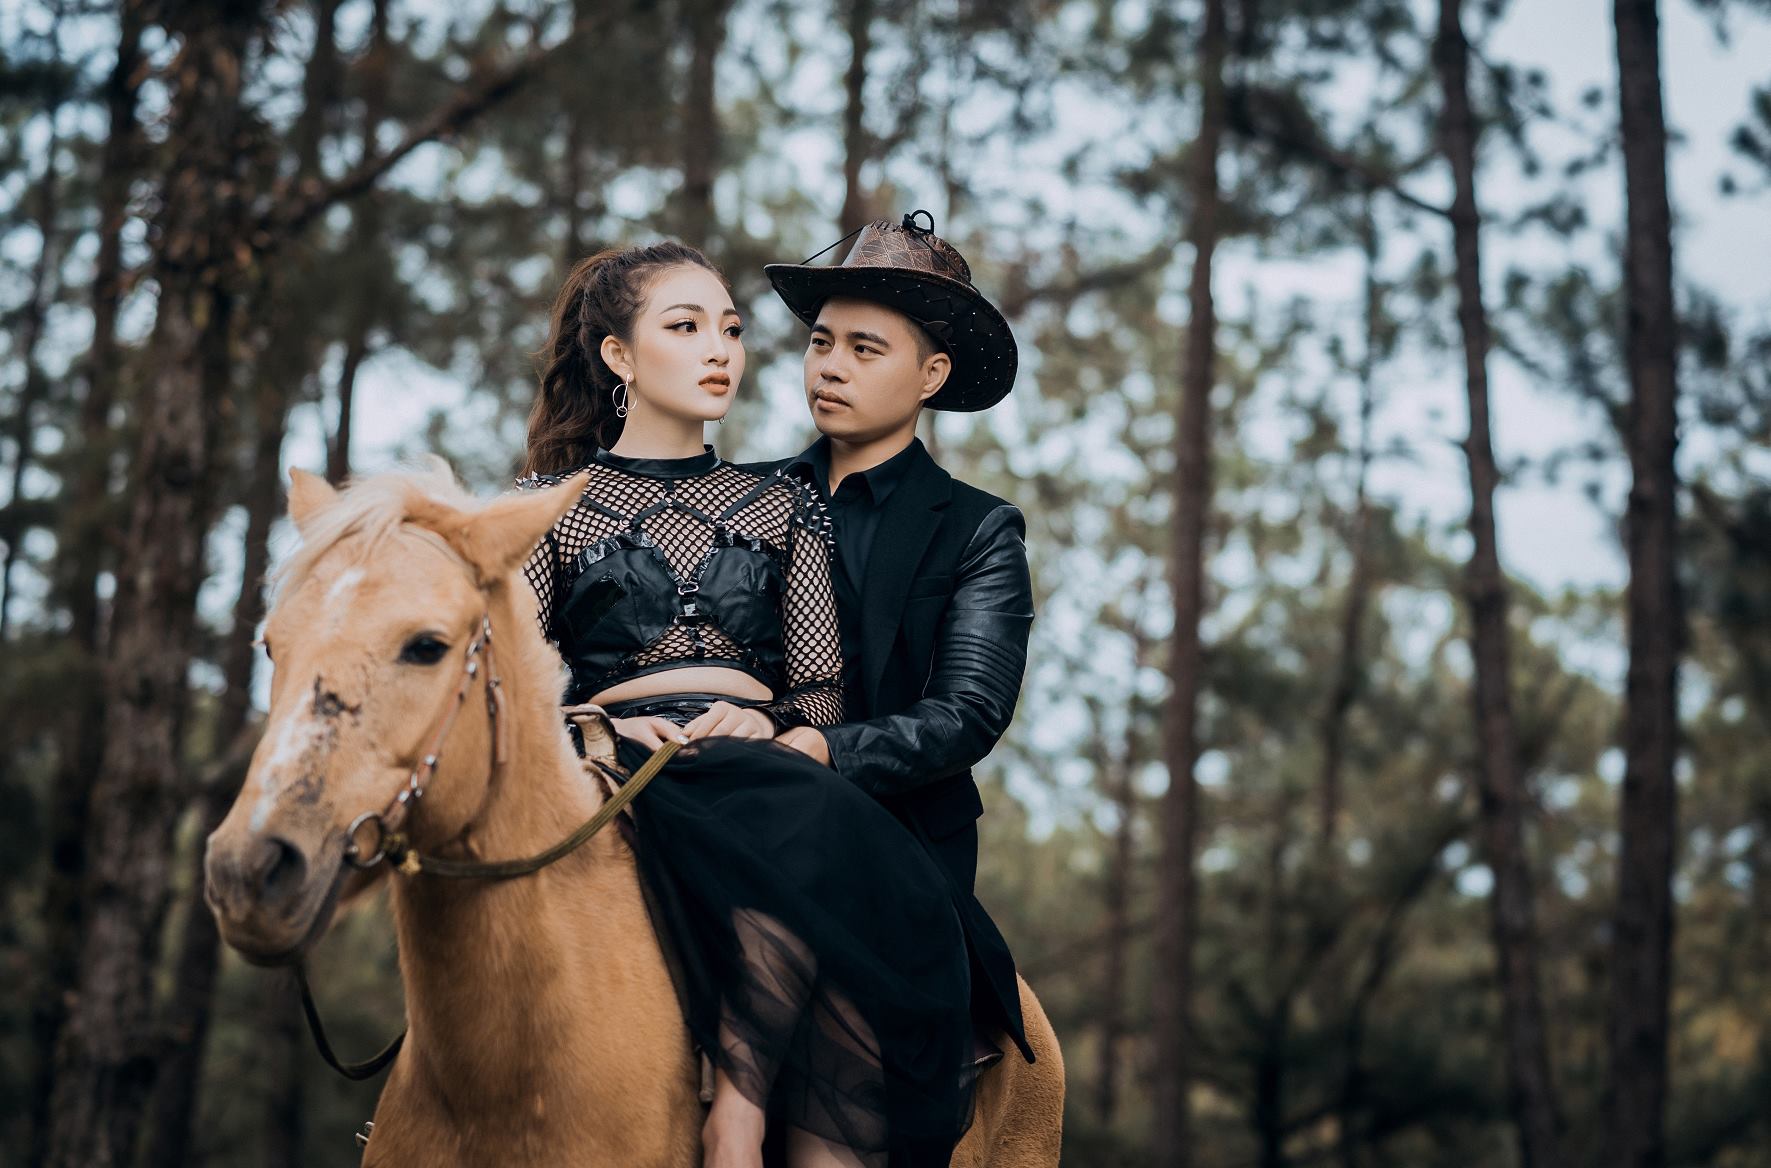 Album ảnh cưới xuyên Việt của cặp đôi Năng Tĩnh - Thu Hương